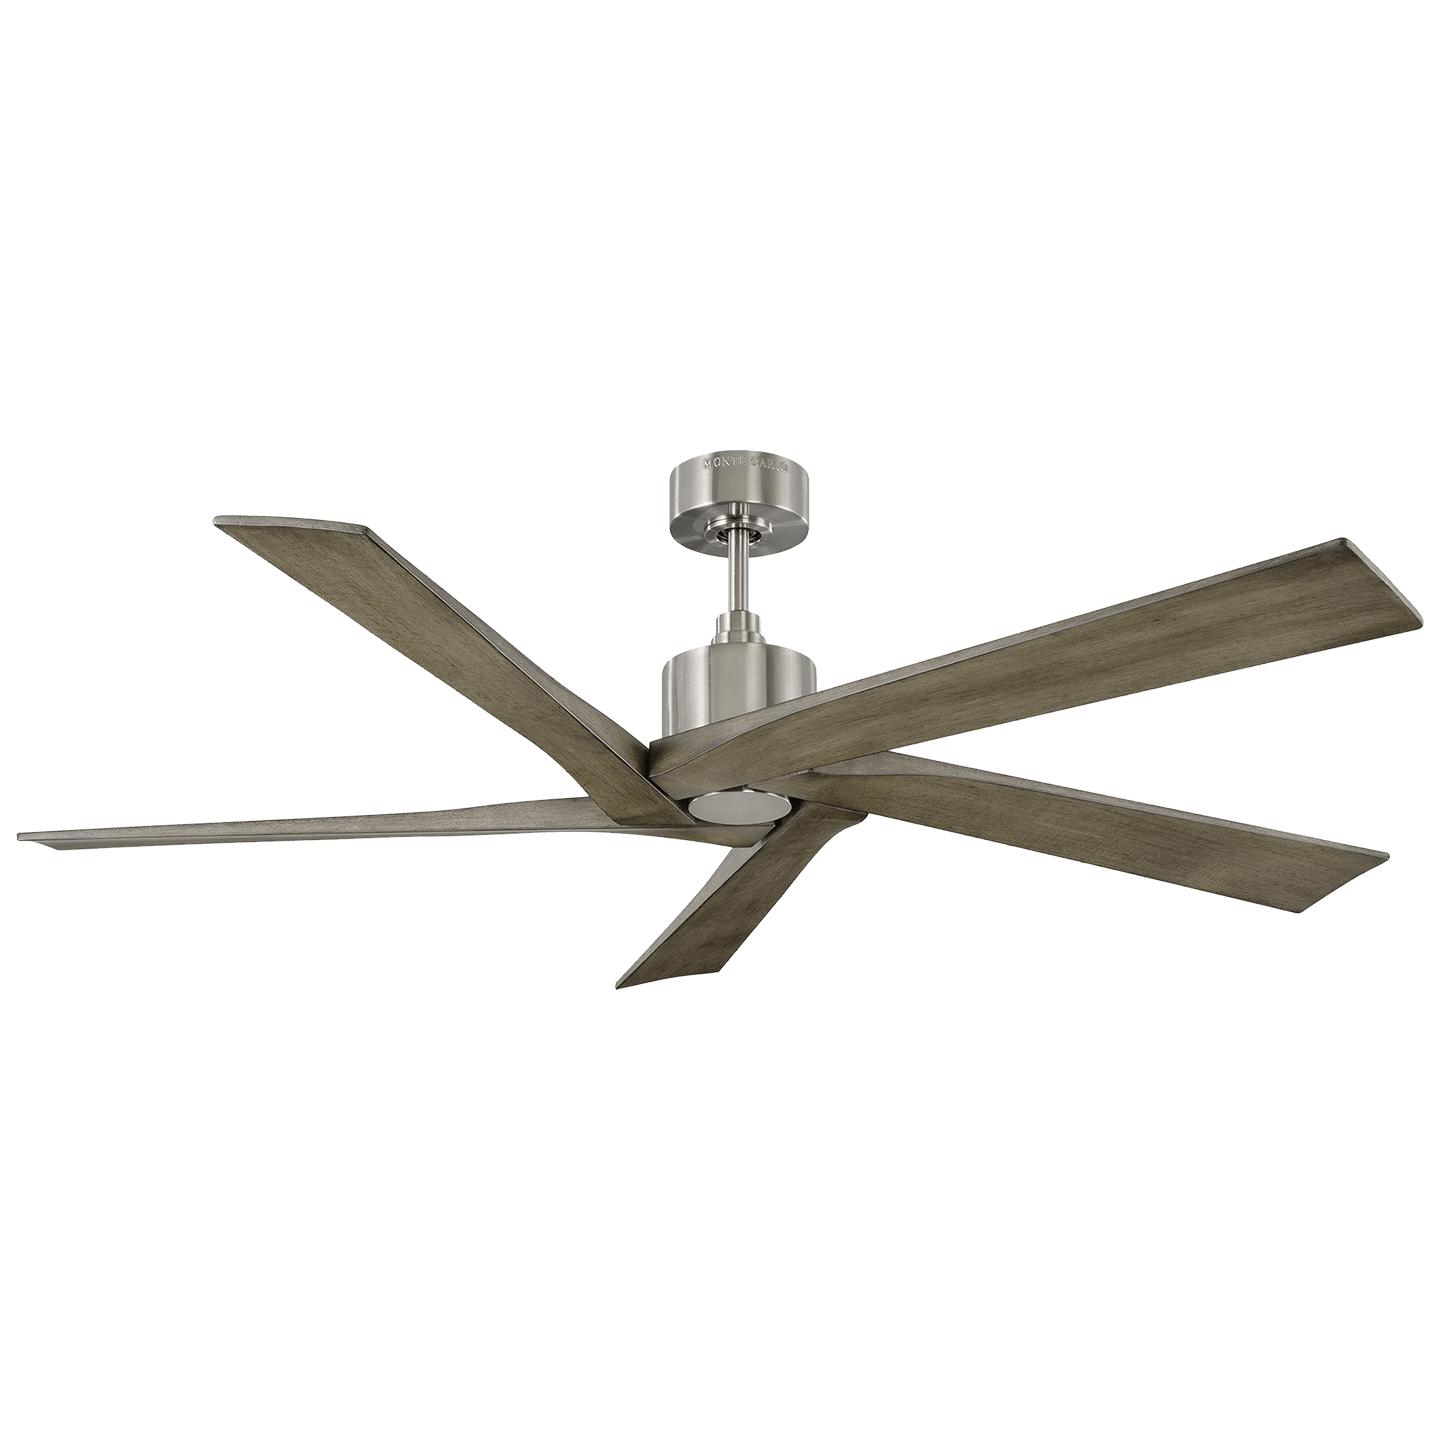 Купить Потолочный вентилятор Aspen 56" Ceiling Fan в интернет-магазине roooms.ru